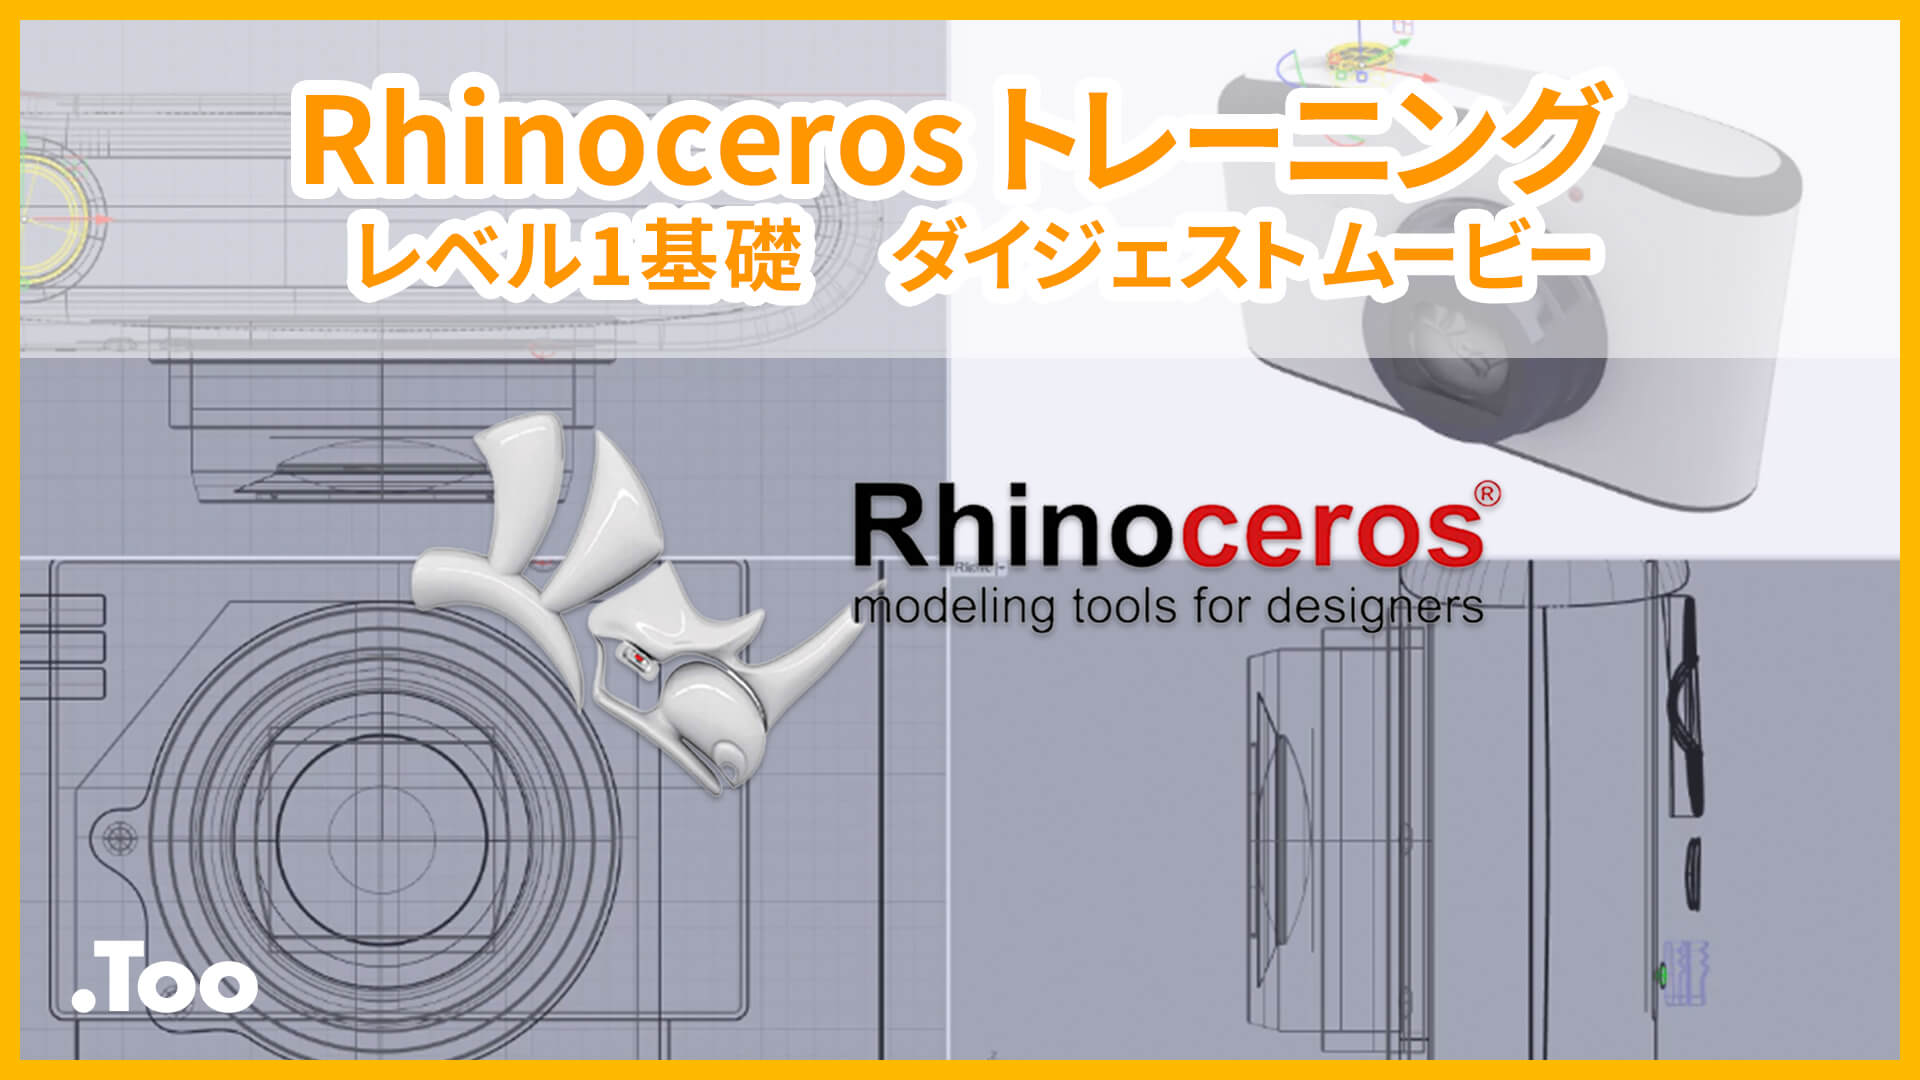 Rhinocerosトレーニング レベル1基礎 ダイジェストムービー